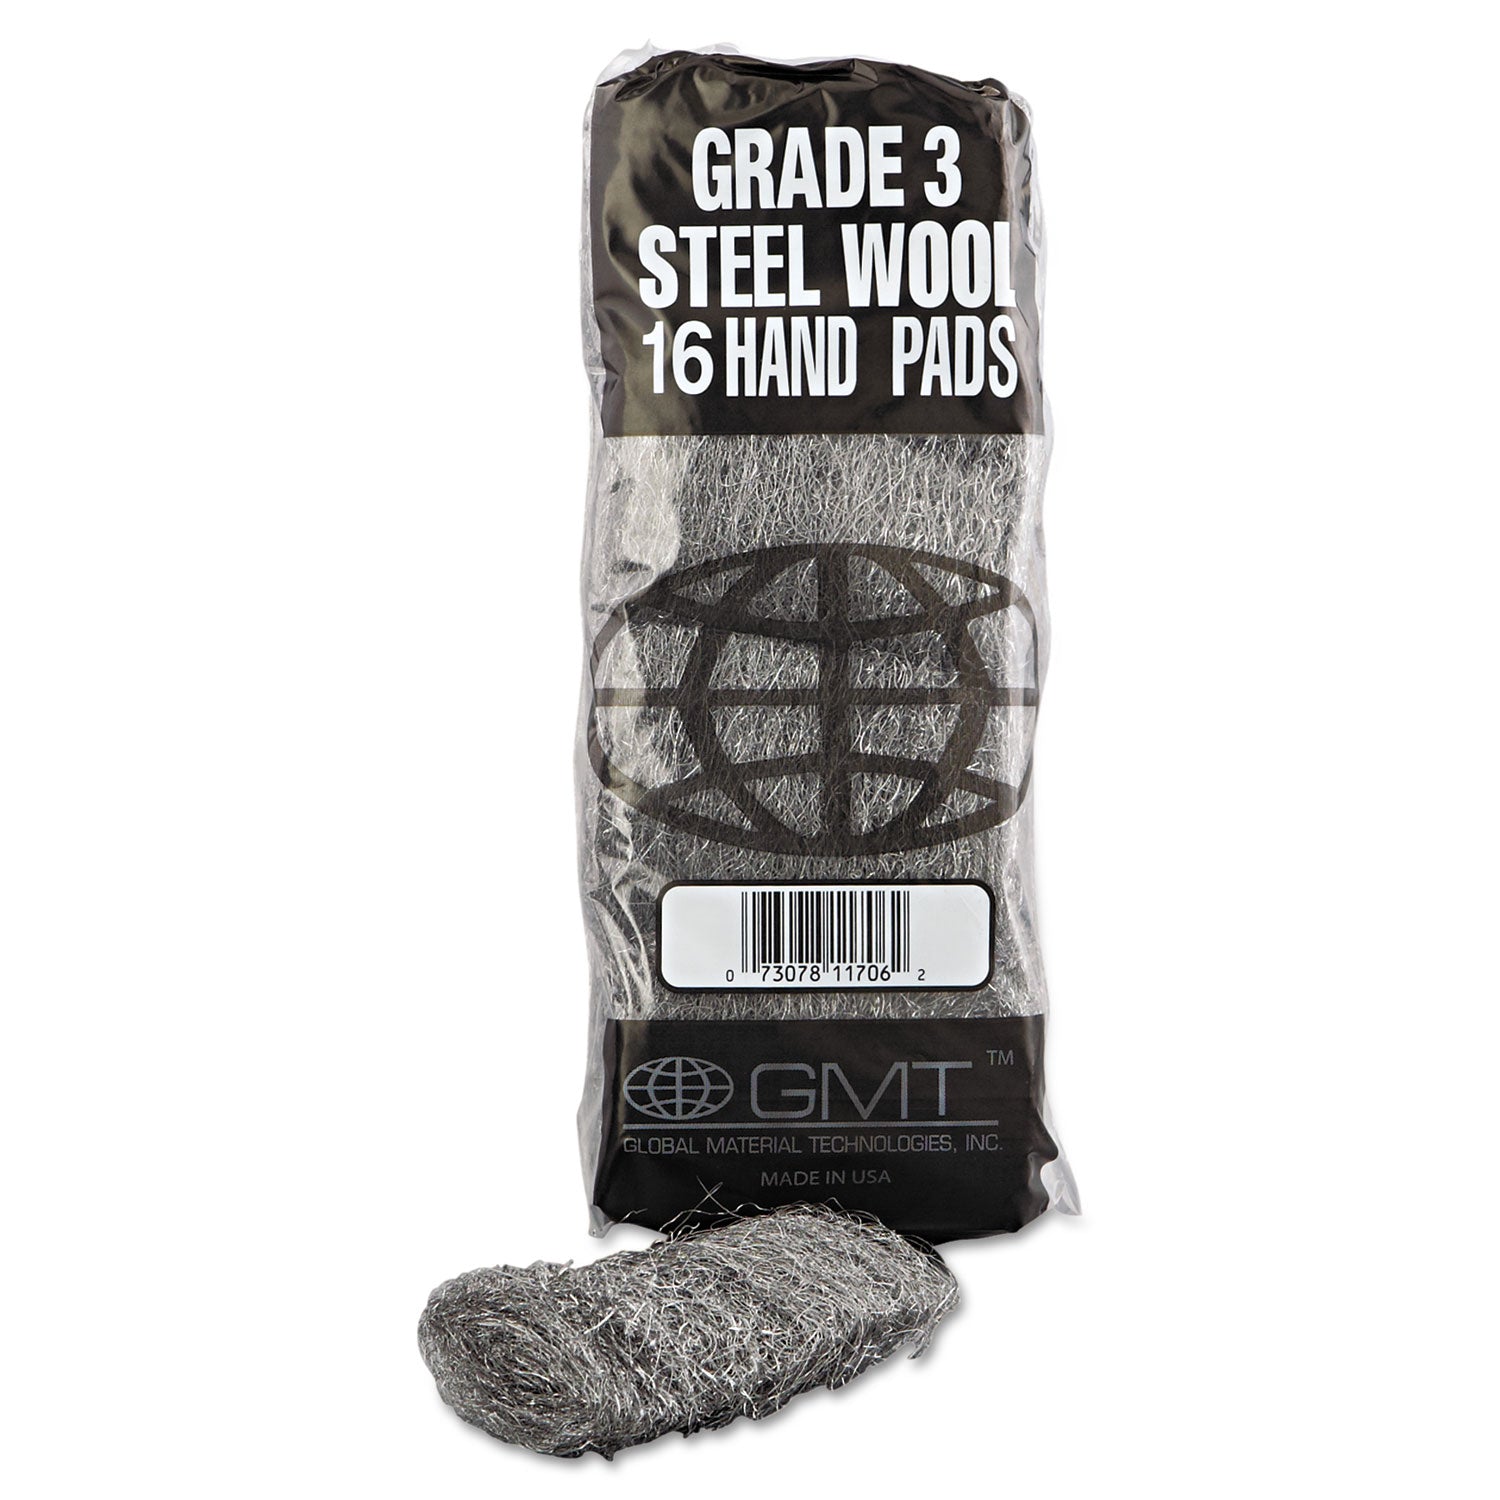 Industrial-Quality Steel Wool Hand Pads, #3 Medium, Steel Gray, 16 Pads/Sleeve, 12 Sleeves/Carton - 